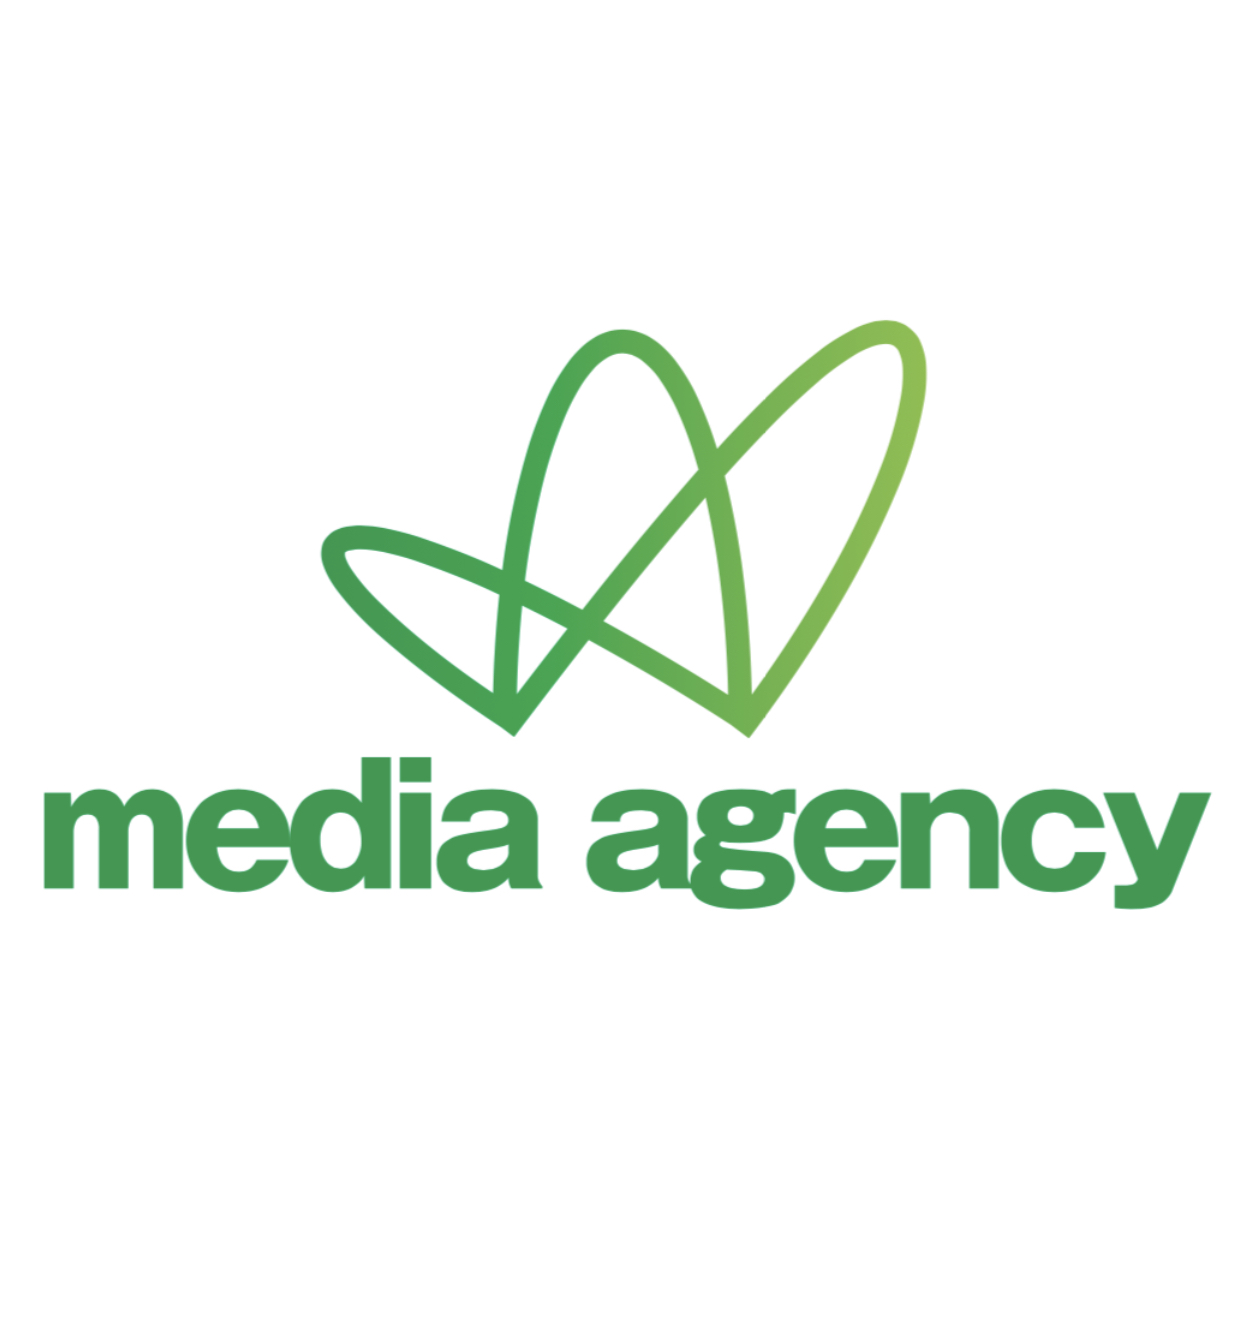 Madia Agency